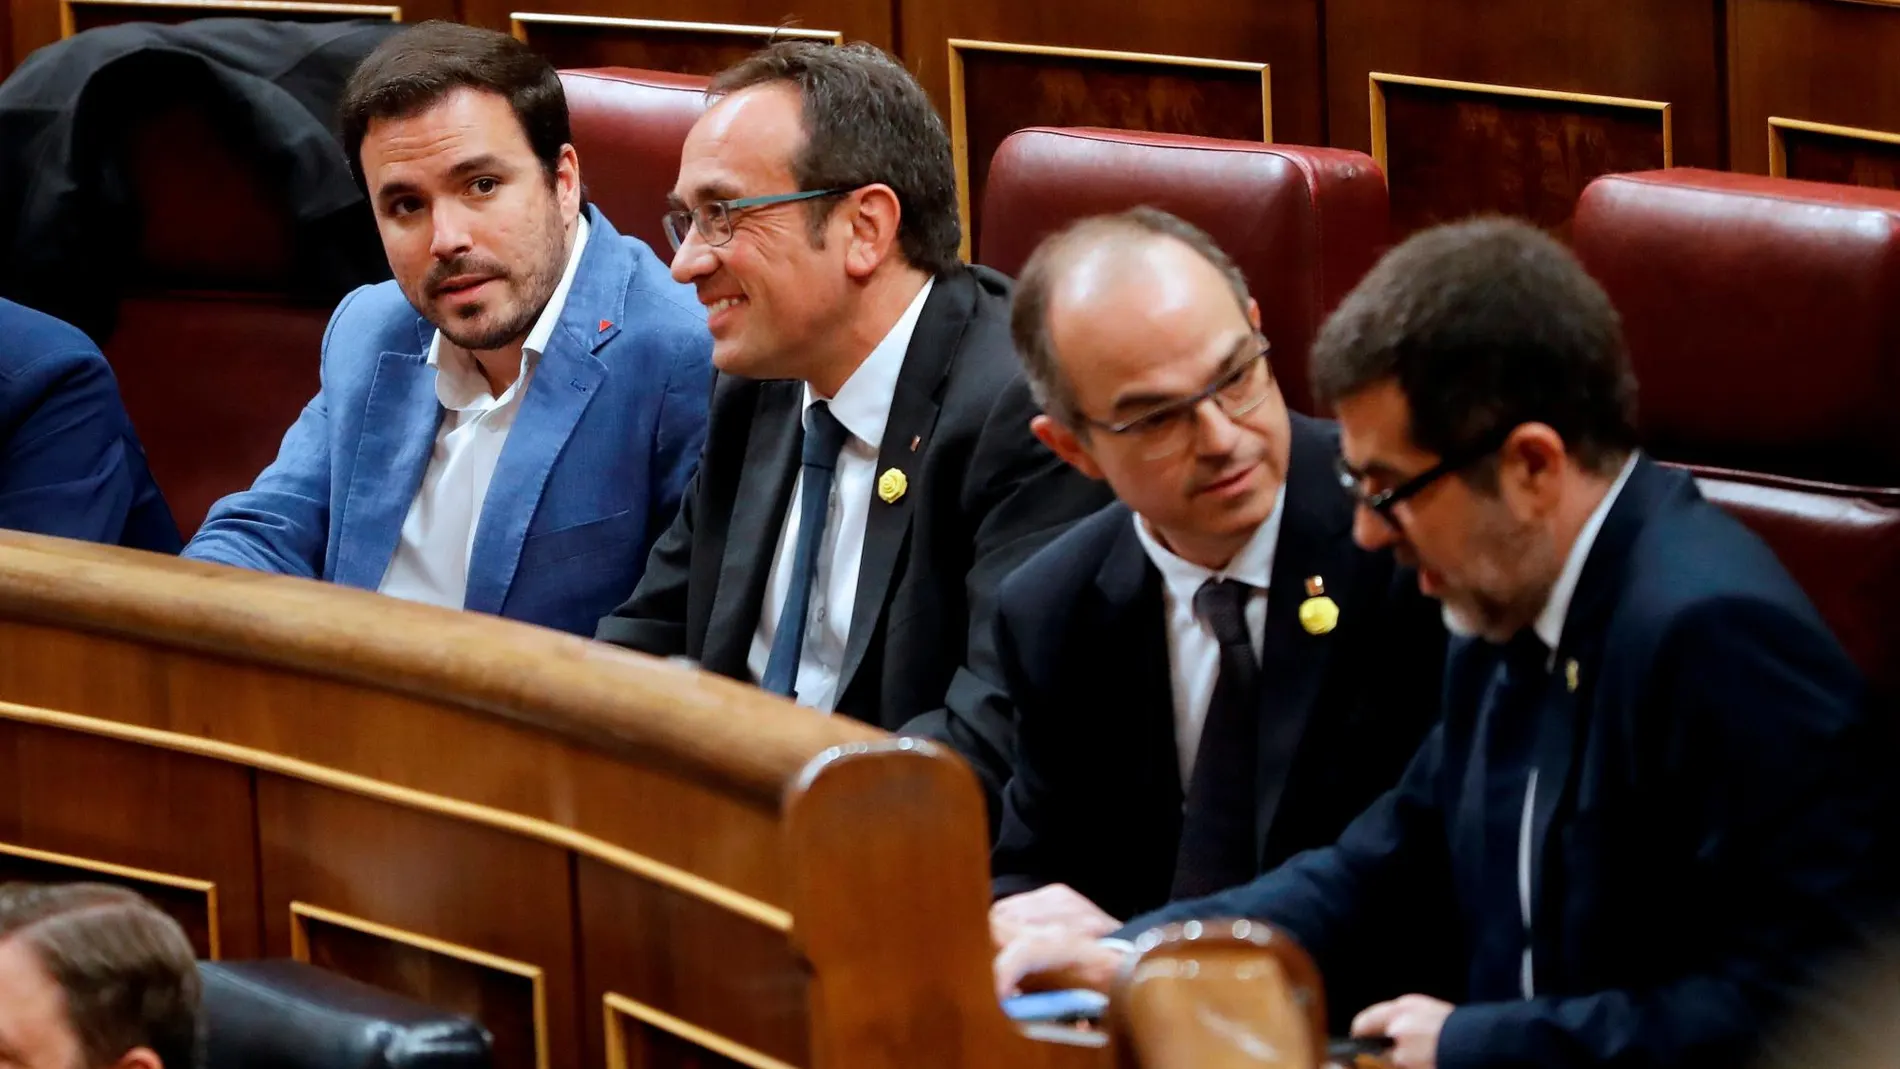 Los ex consellers presos tienen permiso para salir de la cárcel porque la cámara catalana ha pedido su comparecencia